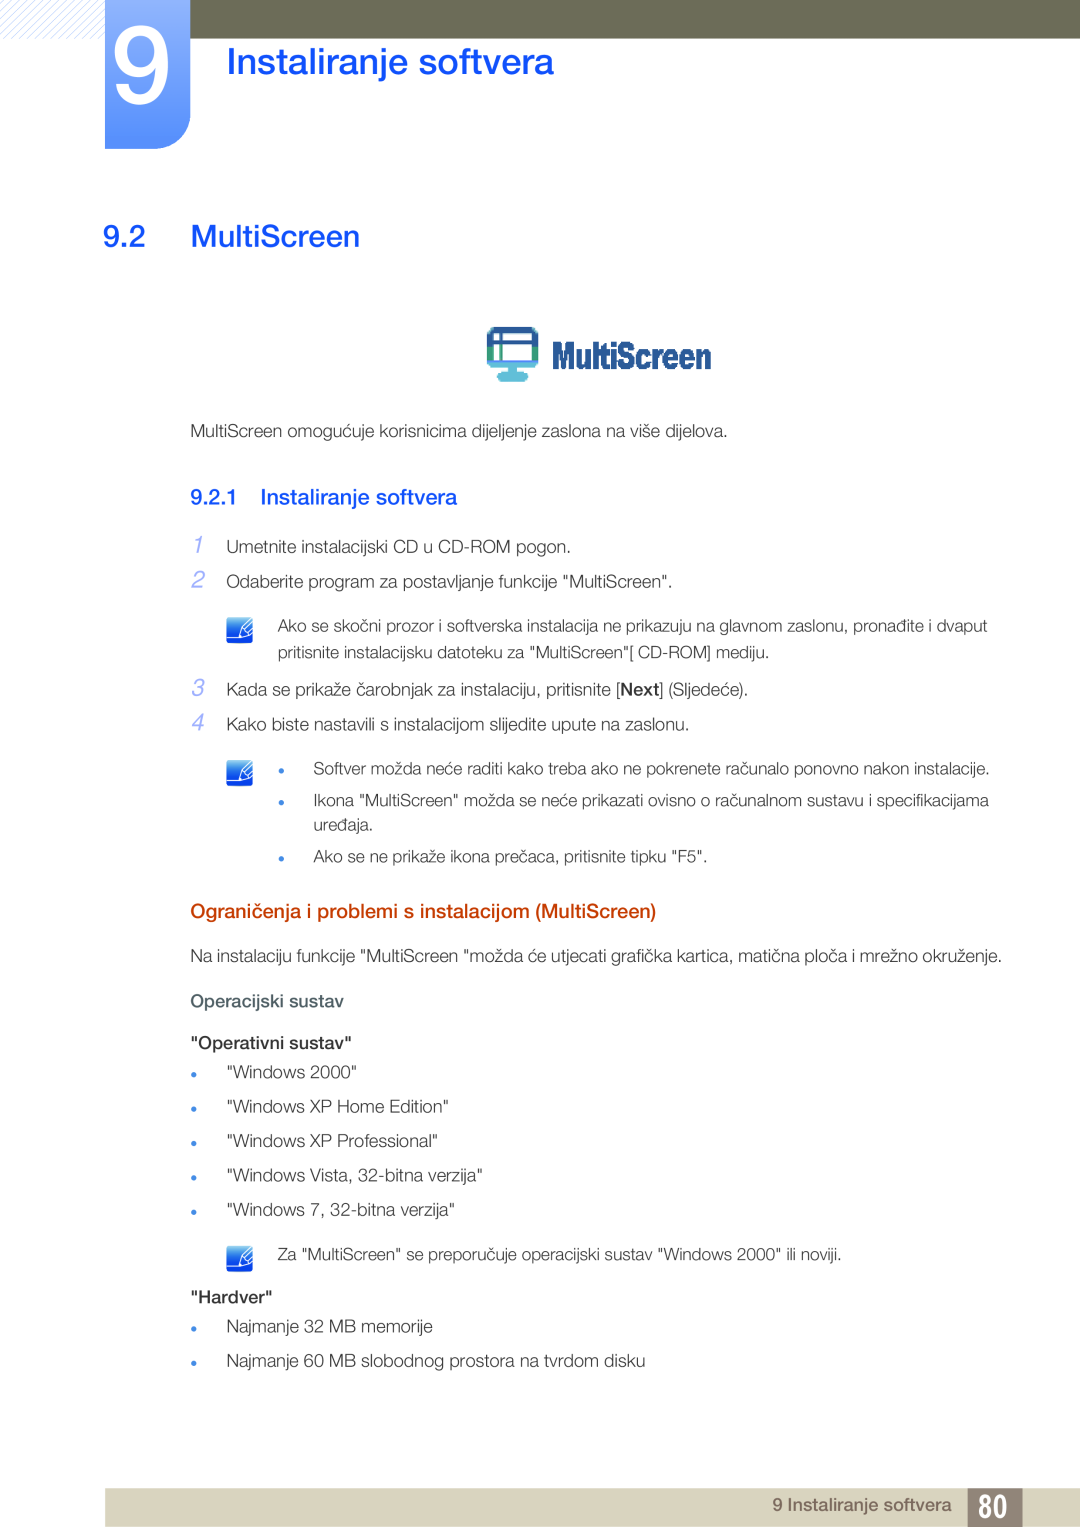 Samsung LF22TSWTBDN/EN Instaliranje softvera, Ograničenja i problemi s instalacijom MultiScreen, Operacijski sustav 